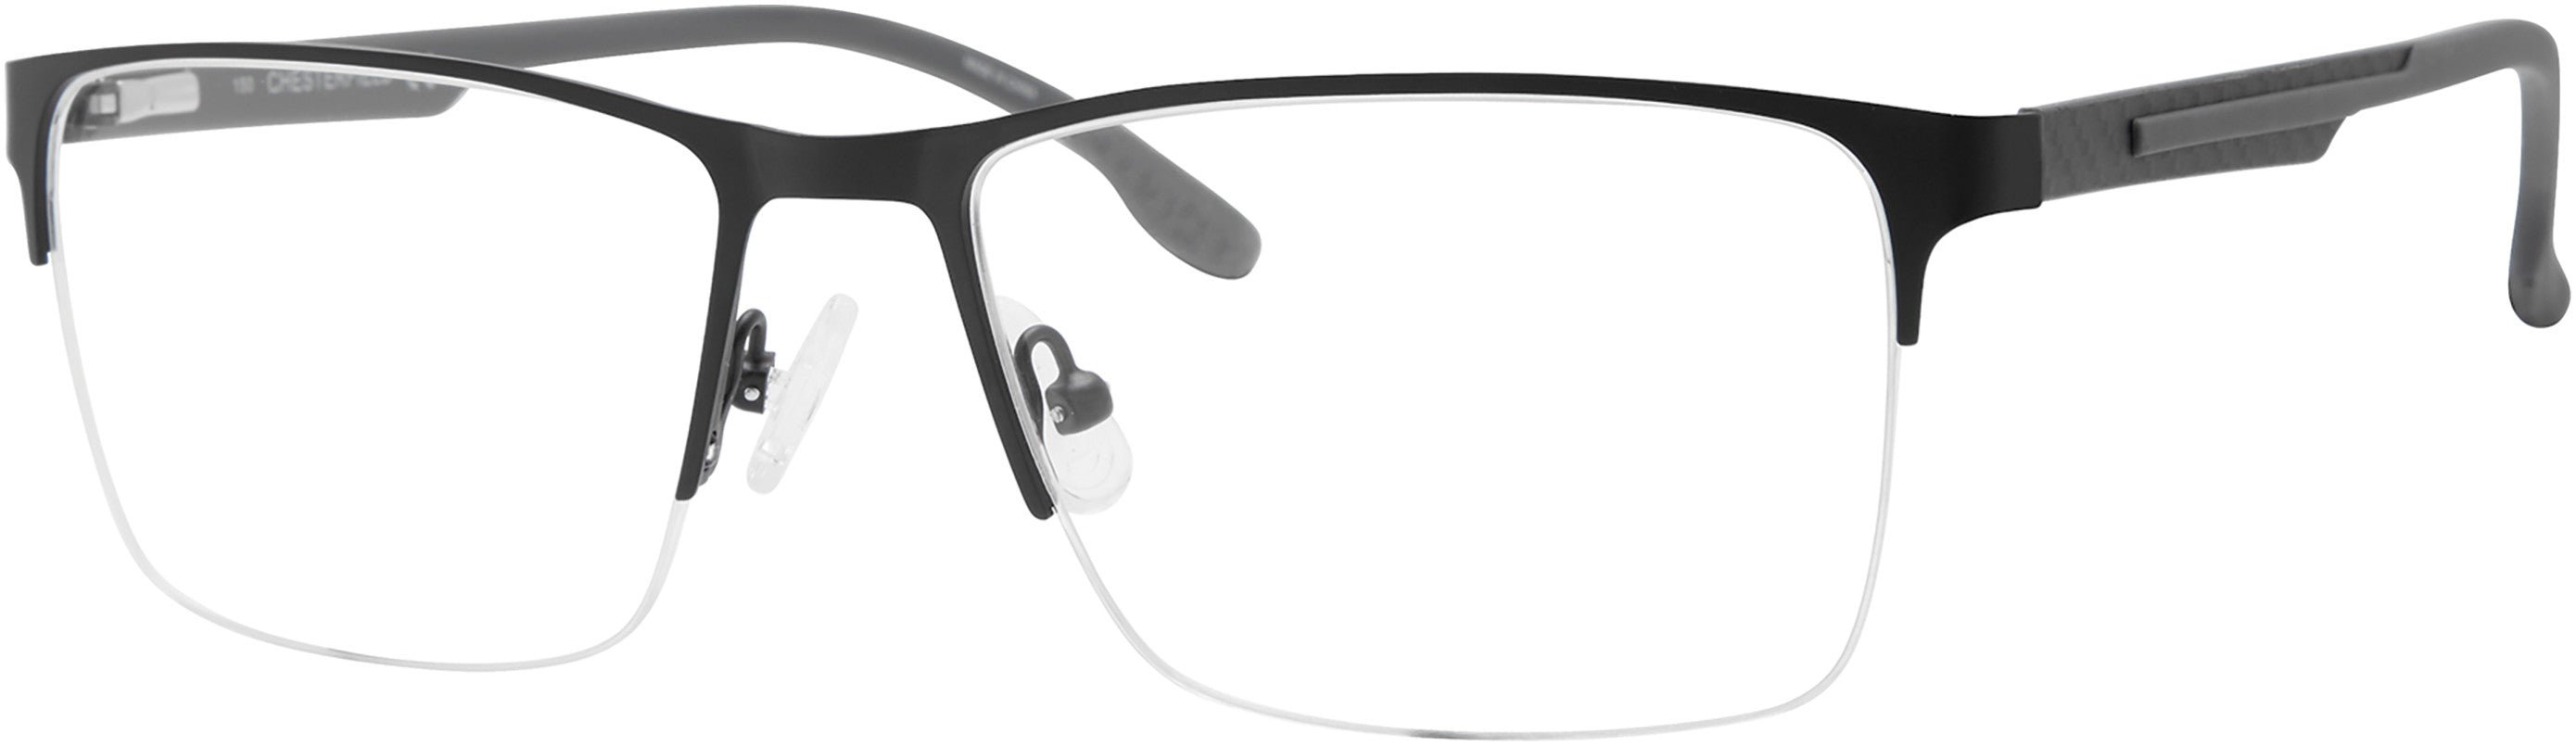  Chesterfield 69XL Rectangular Eyeglasses 0003-0003  Matte Black (00 Demo Lens)